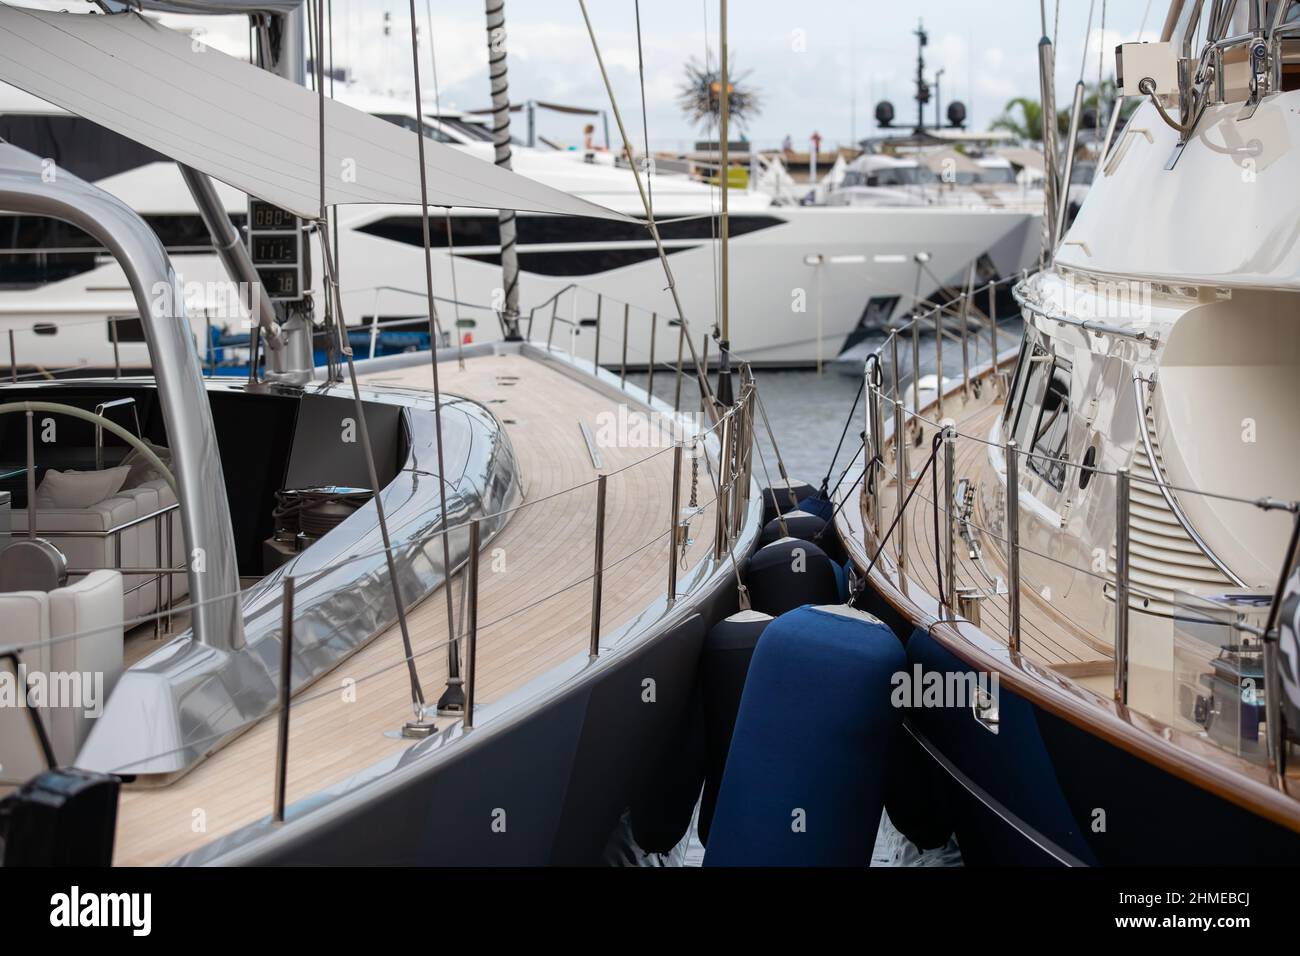 Holzdecks von Segelyachten im klassischen Stil mit Chromgeländer entlang der Kante der Boote in Monaco an sonnigen Tag, hängt eine Menge von Kotflügeln, ein Stockfoto